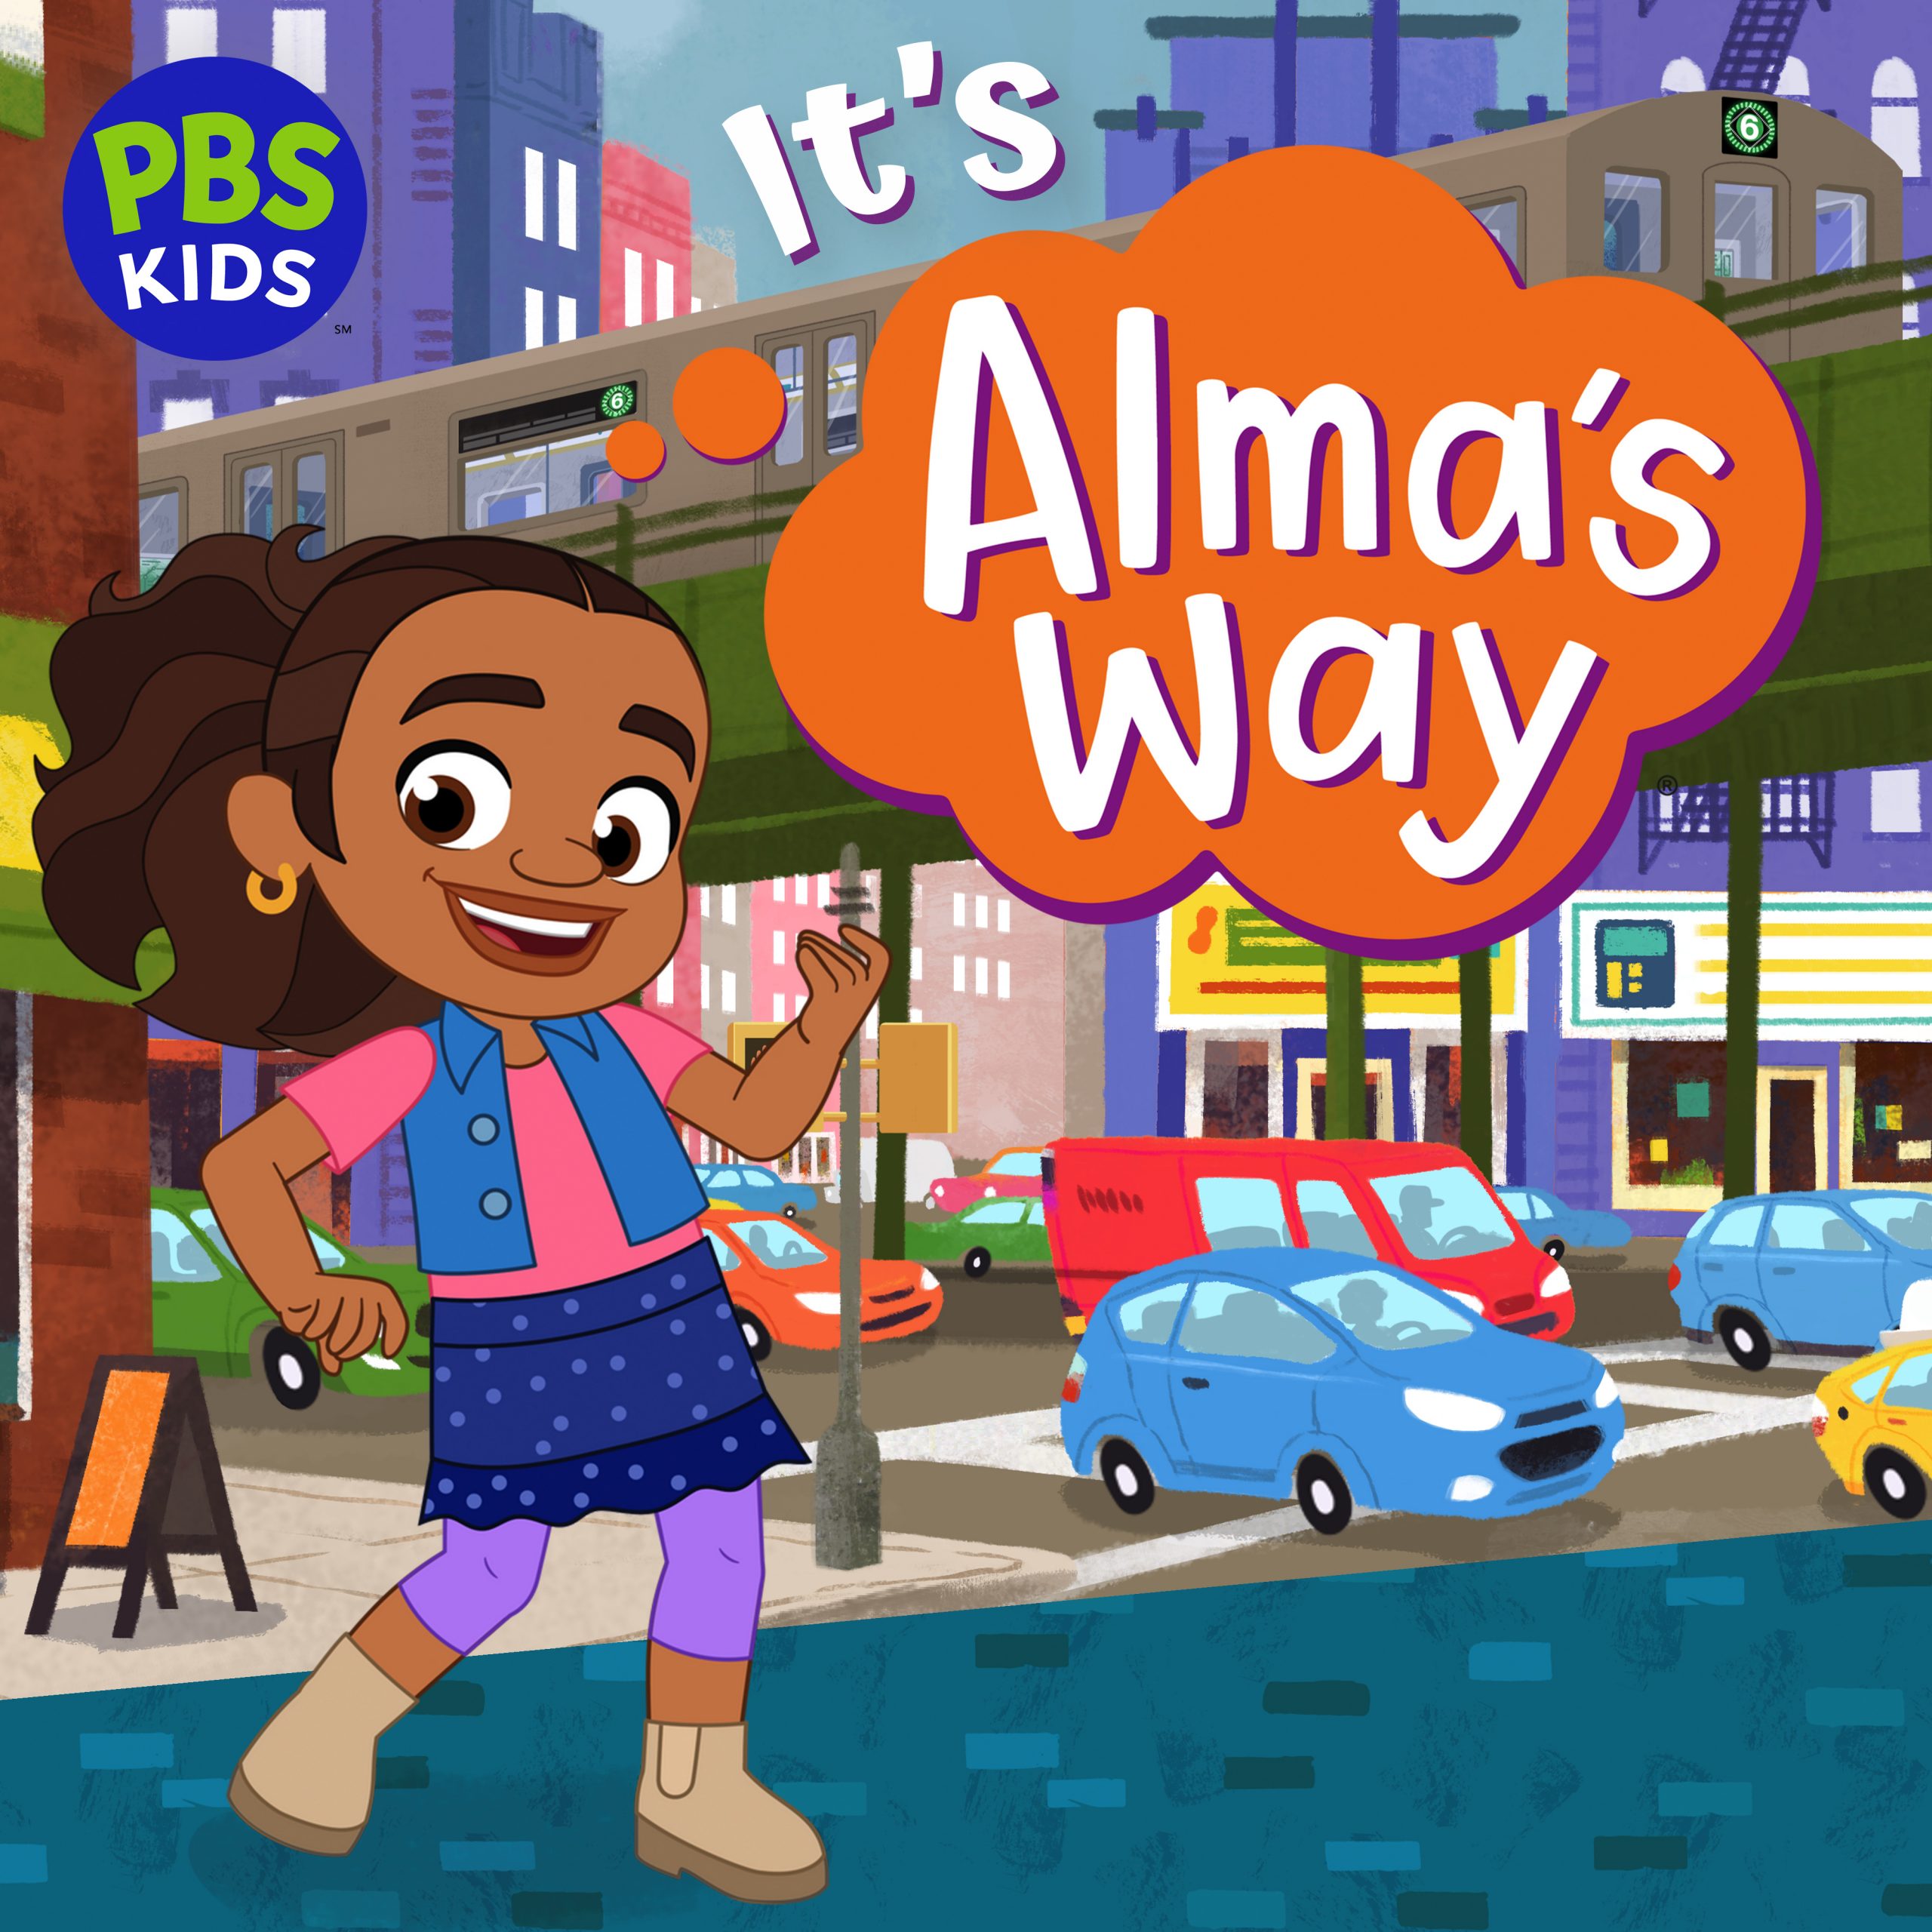 Alma dancing near busy street. Reads "It's Ama's way"